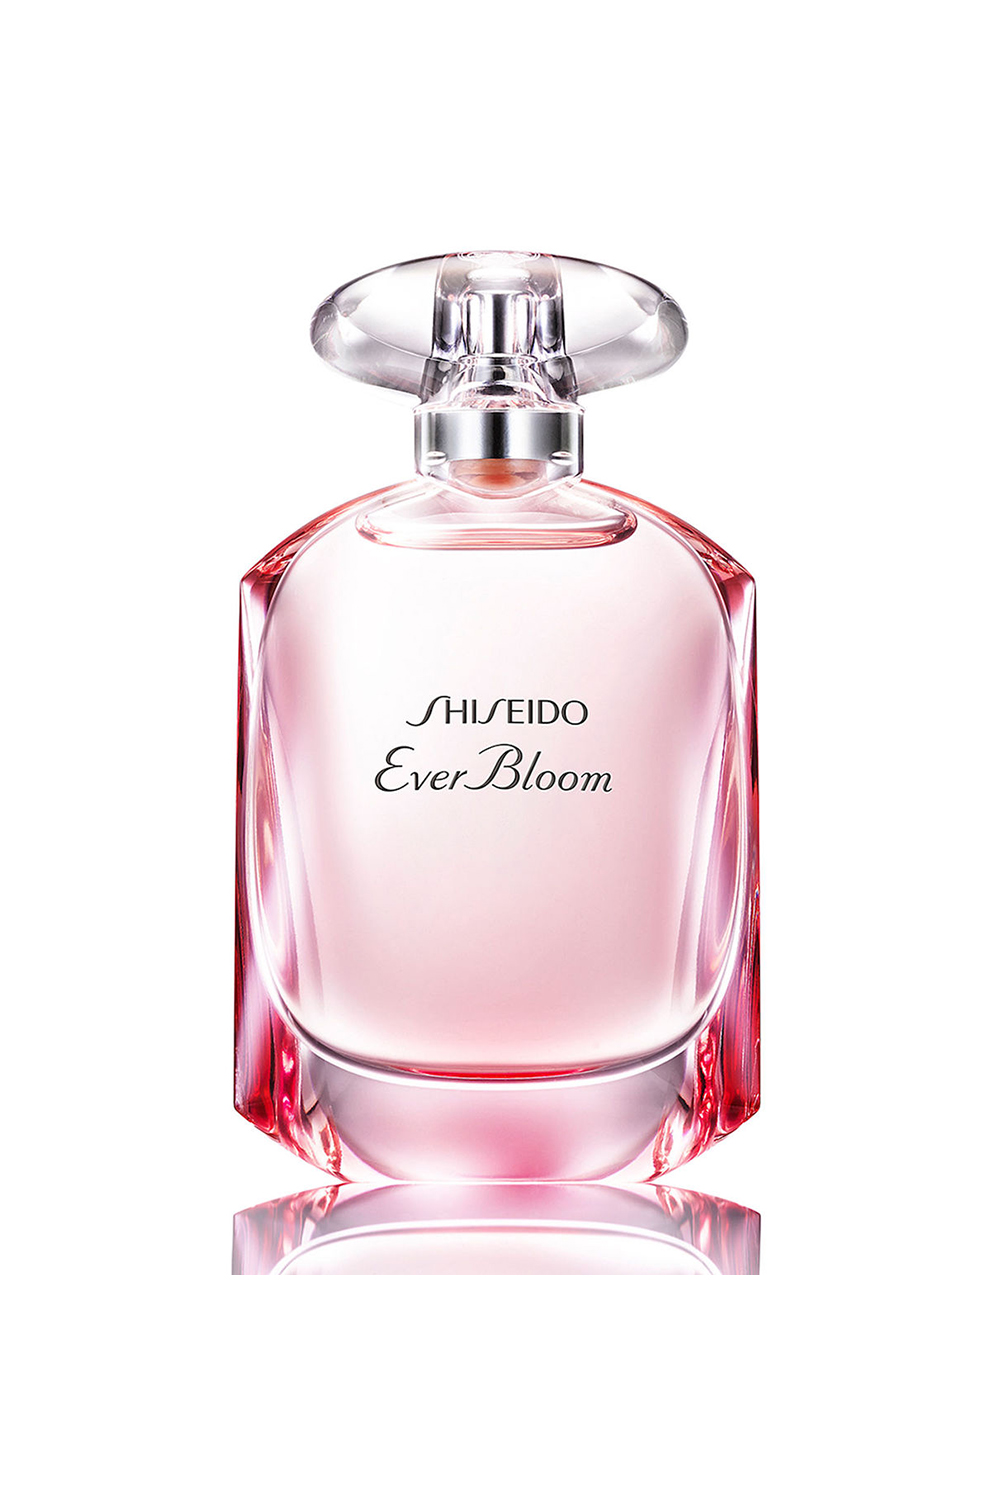 Shiseido Ever Bloom EDP 50ml, $139.